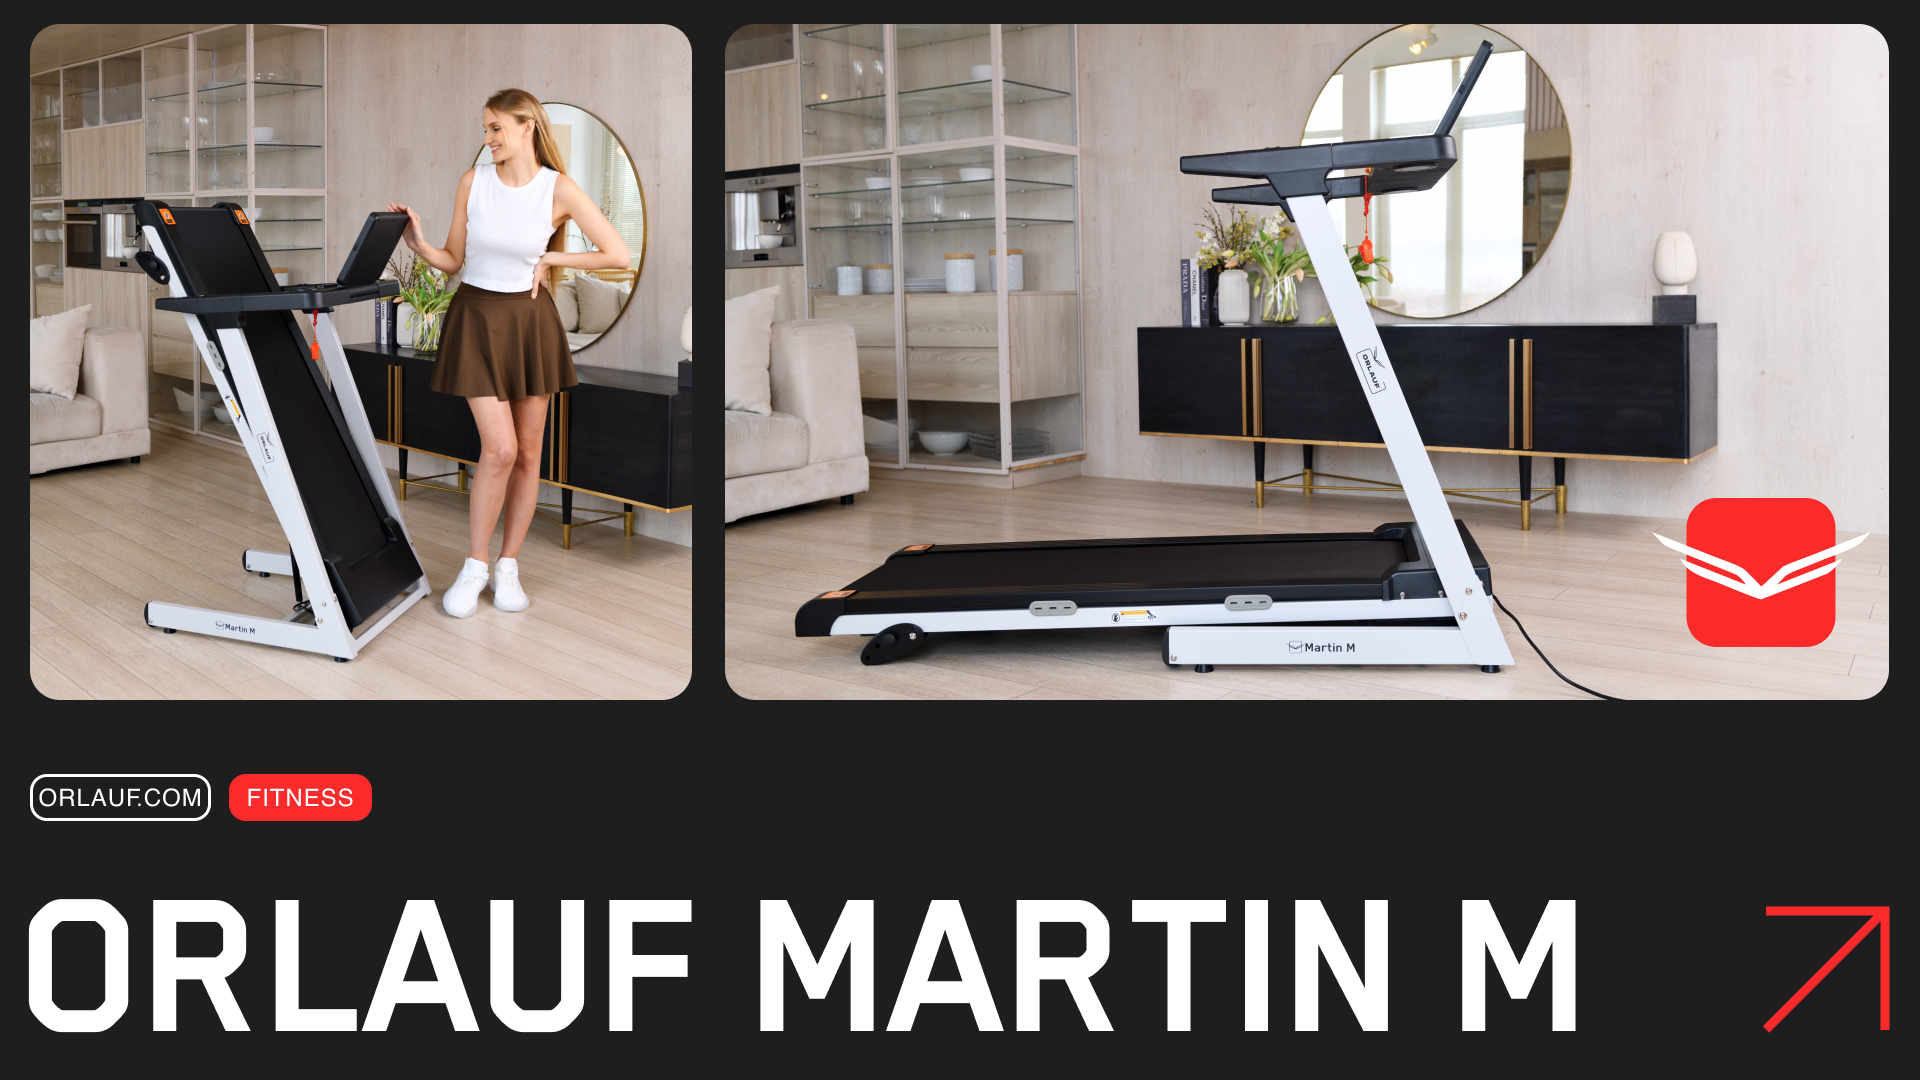 Video review of the treadmill Orlauf Martin M